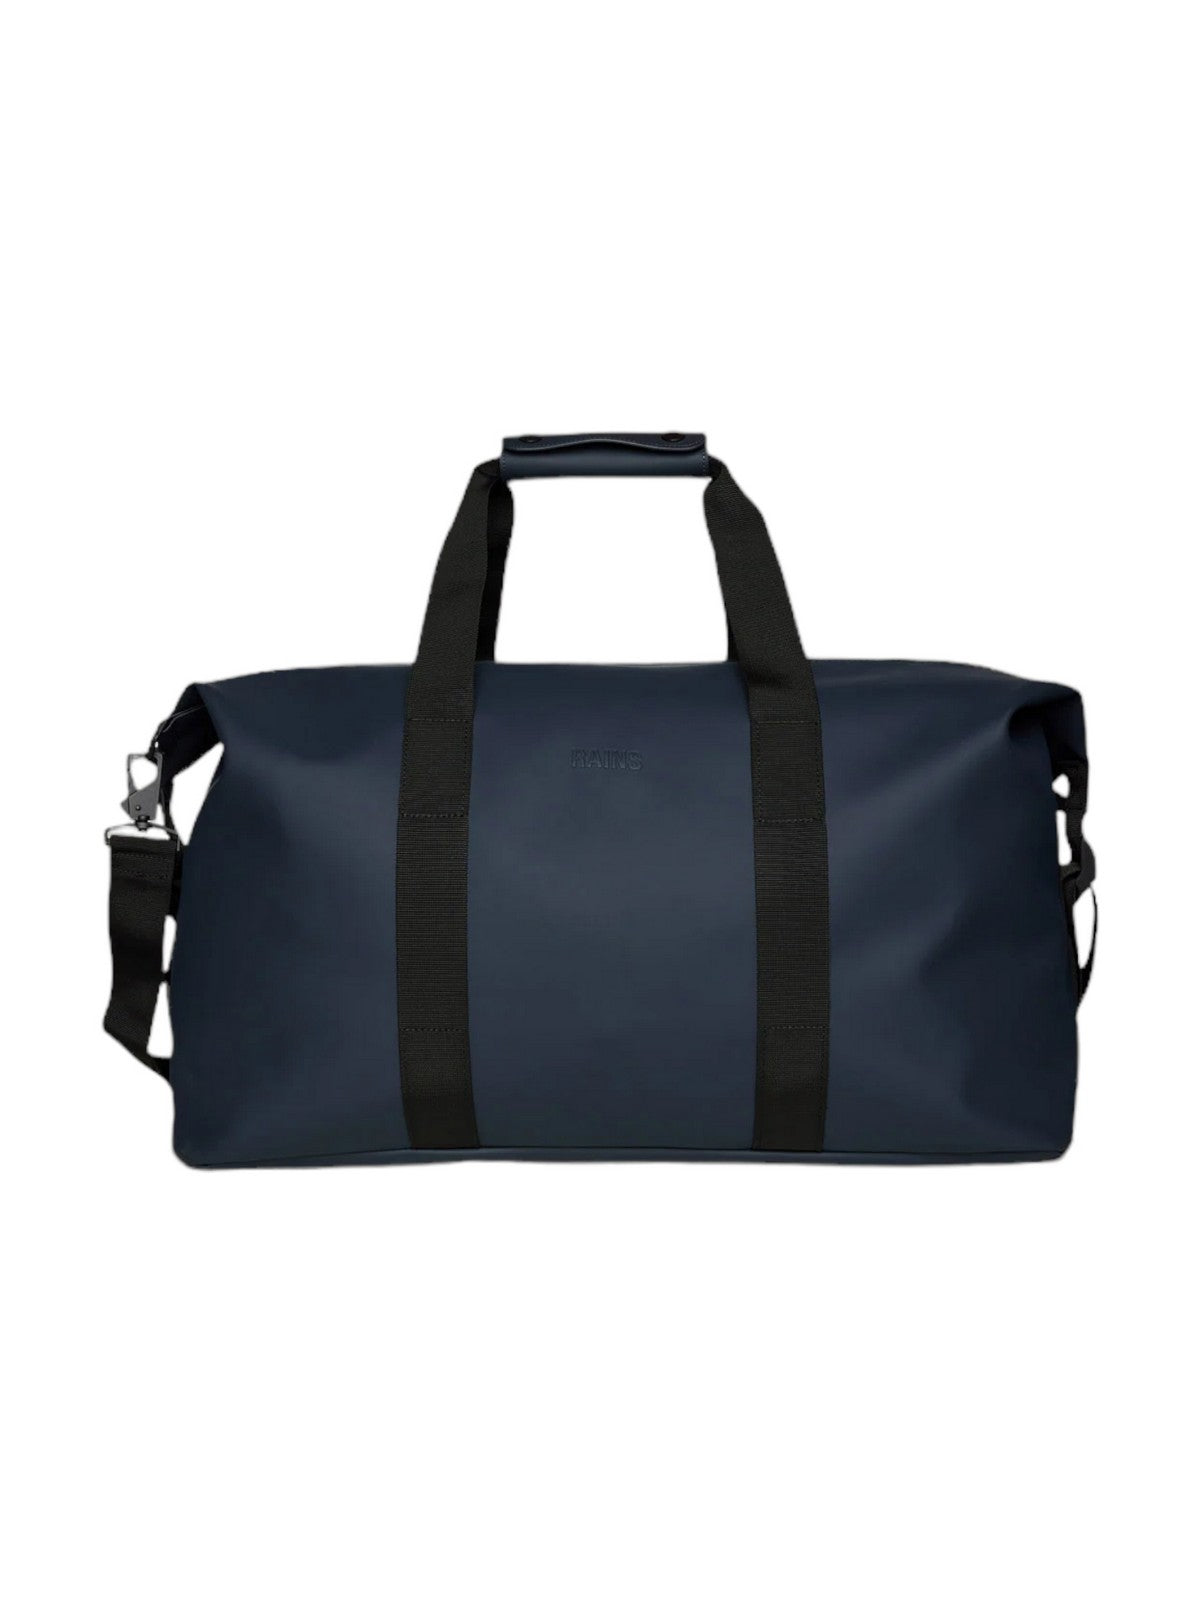 RAINS Bagages et valises à roulettes Unisexe Adulte Hilo Weekend Bag W3 14200 47 Bleu marine